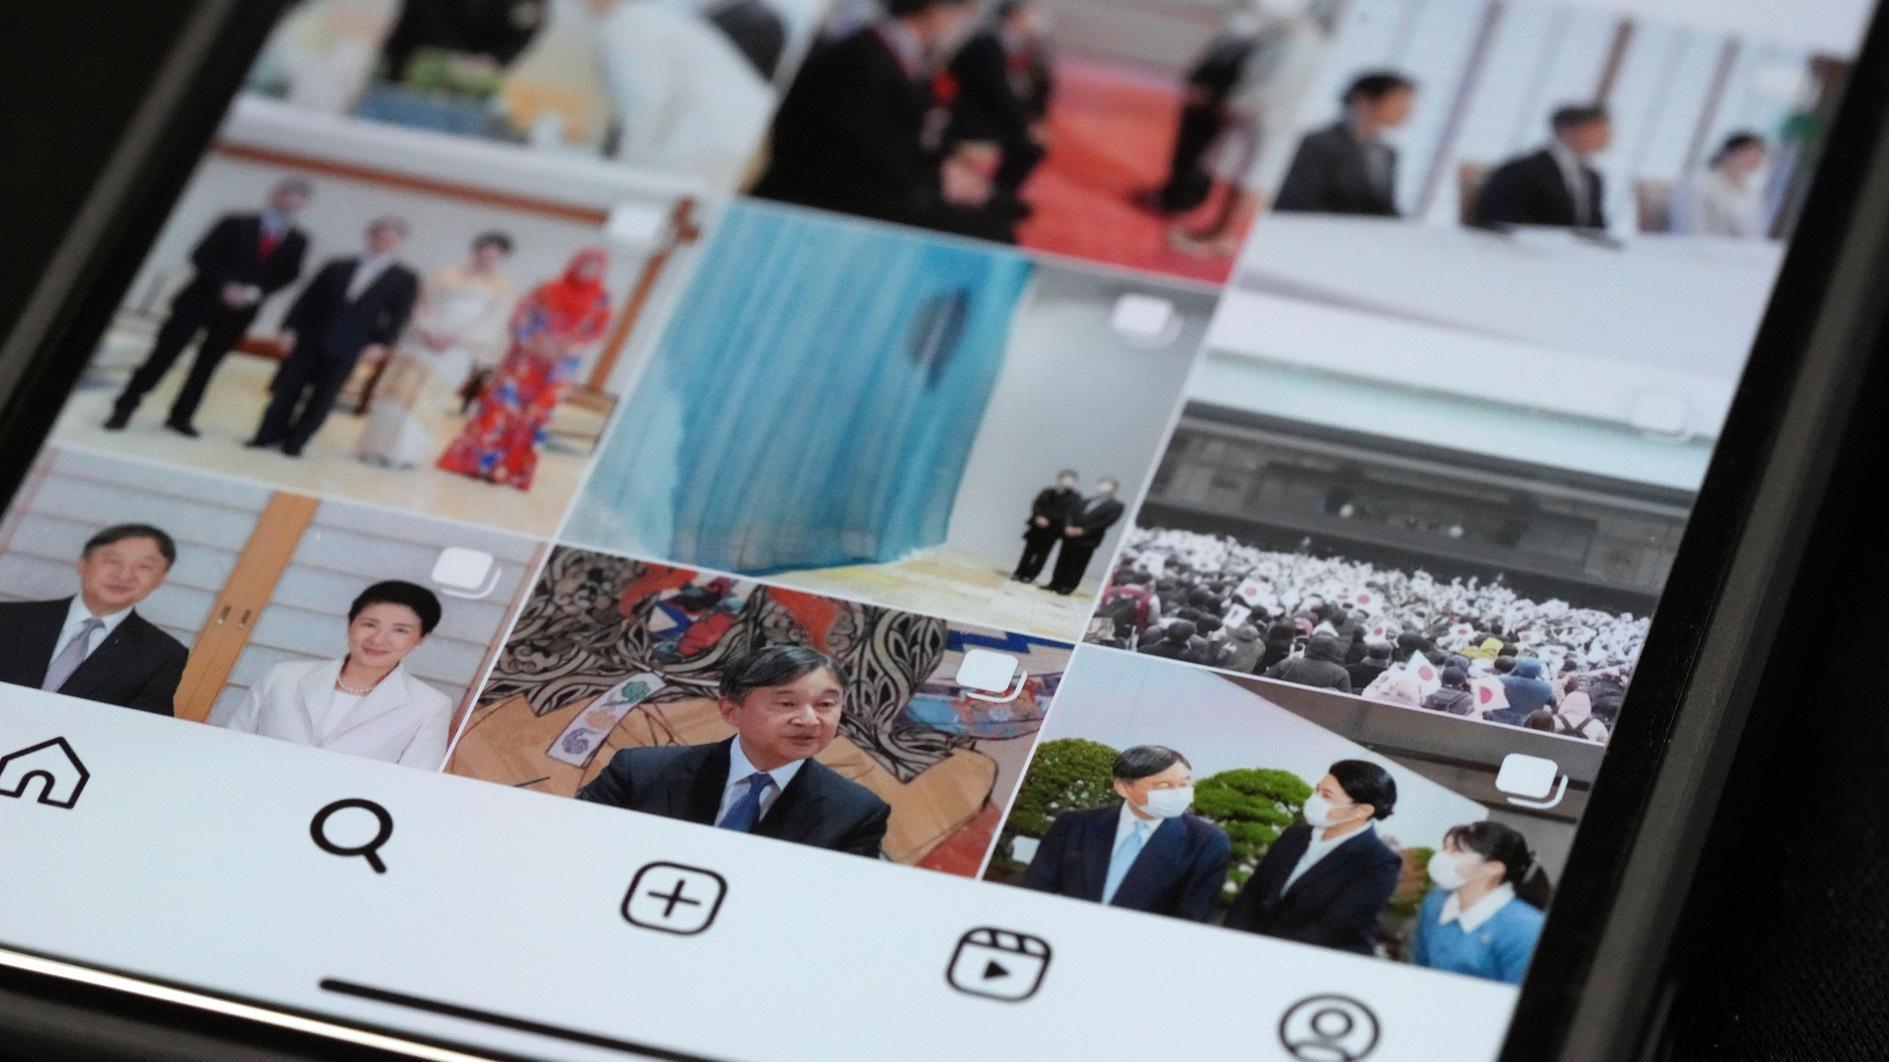 De Japanse koninklijke familie sluit zich aan bij Instagram